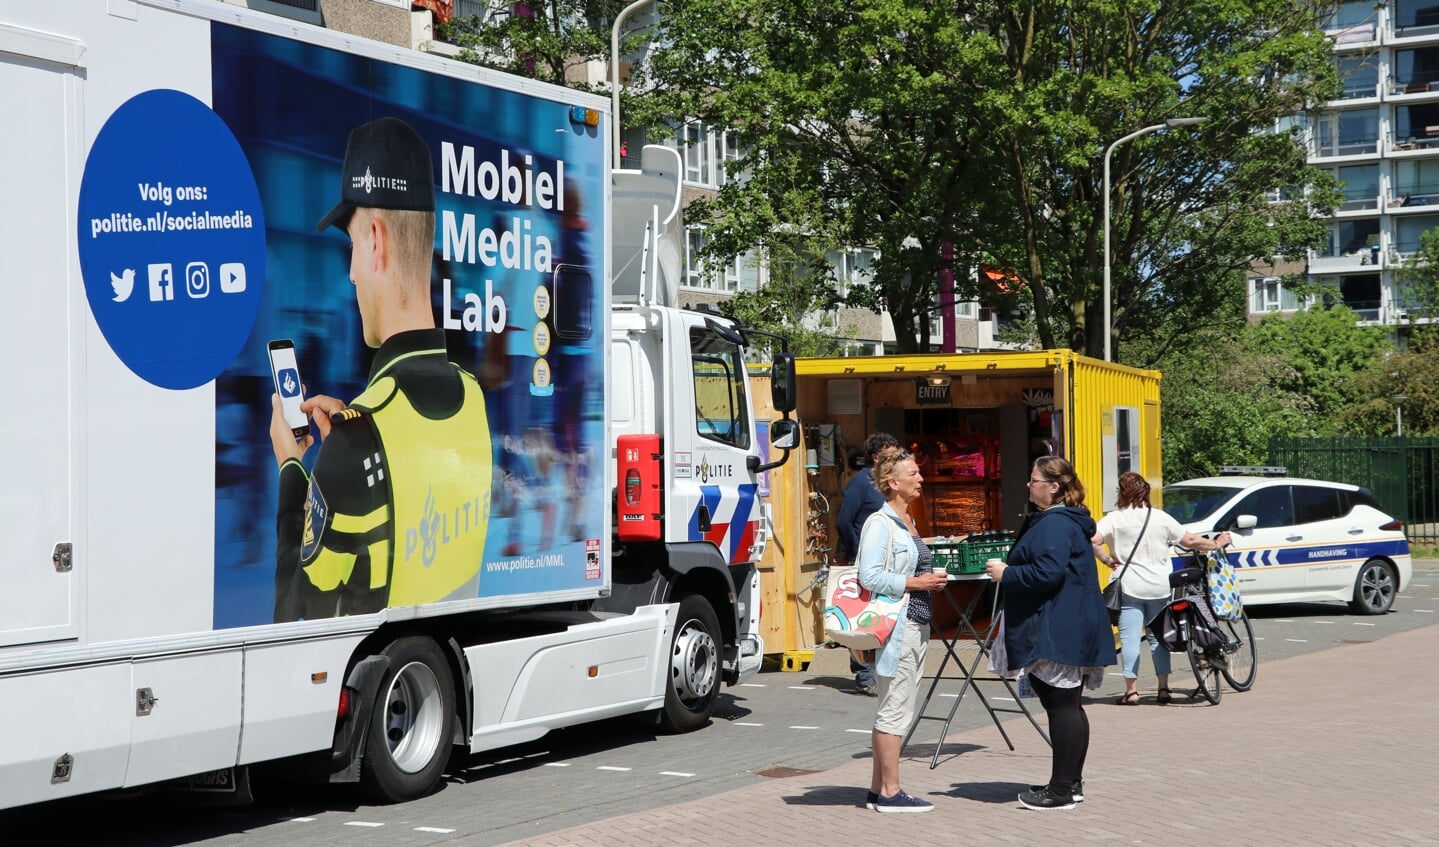 Mobiel media lab tijdens de veiligheidsmarkt in de Gildenwijk in mei 2022 